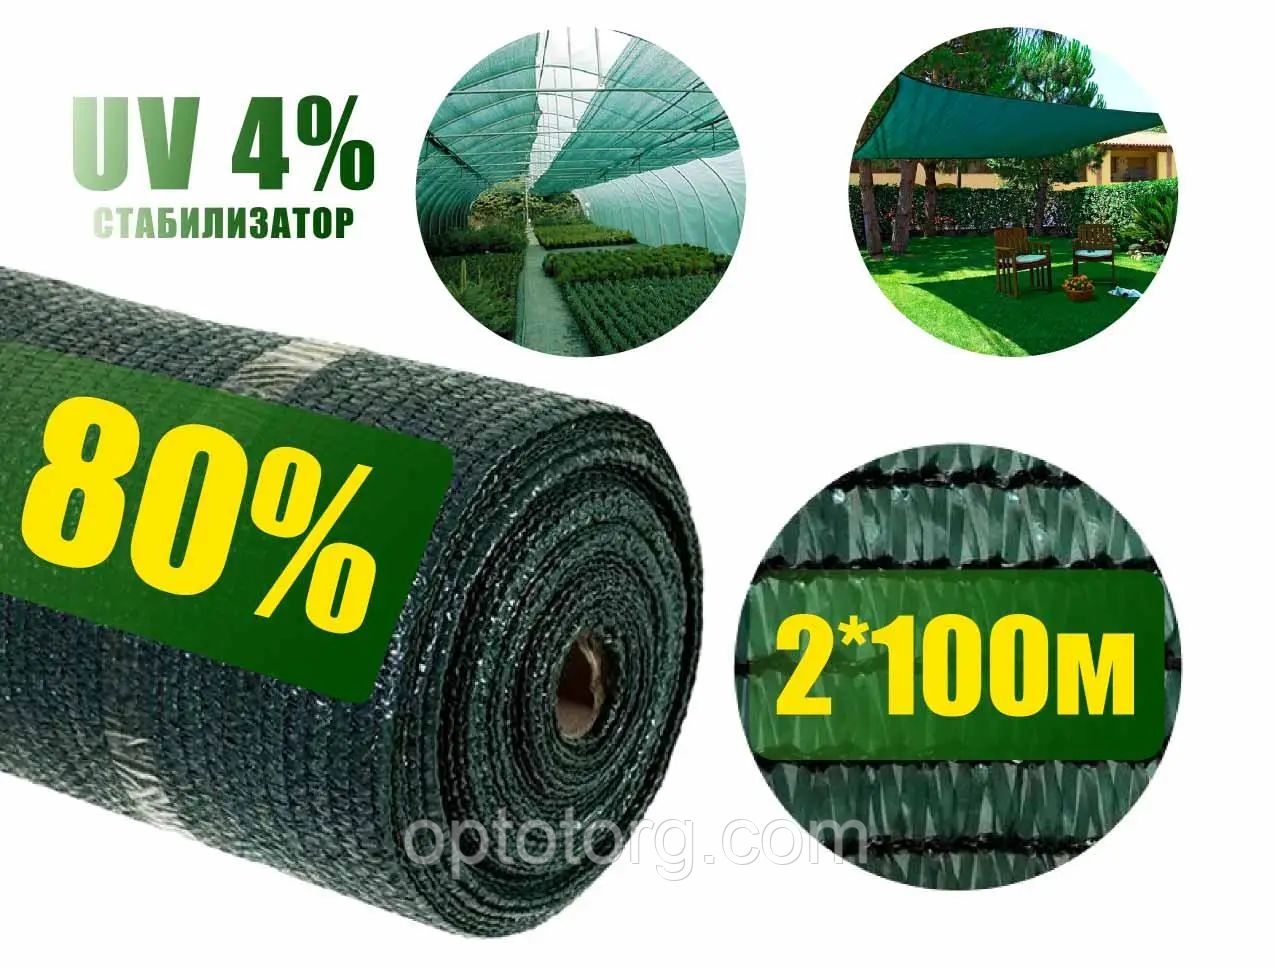  сетка 80% 2м*100м зеленая: продажа, цена в Одессе. Садовые .